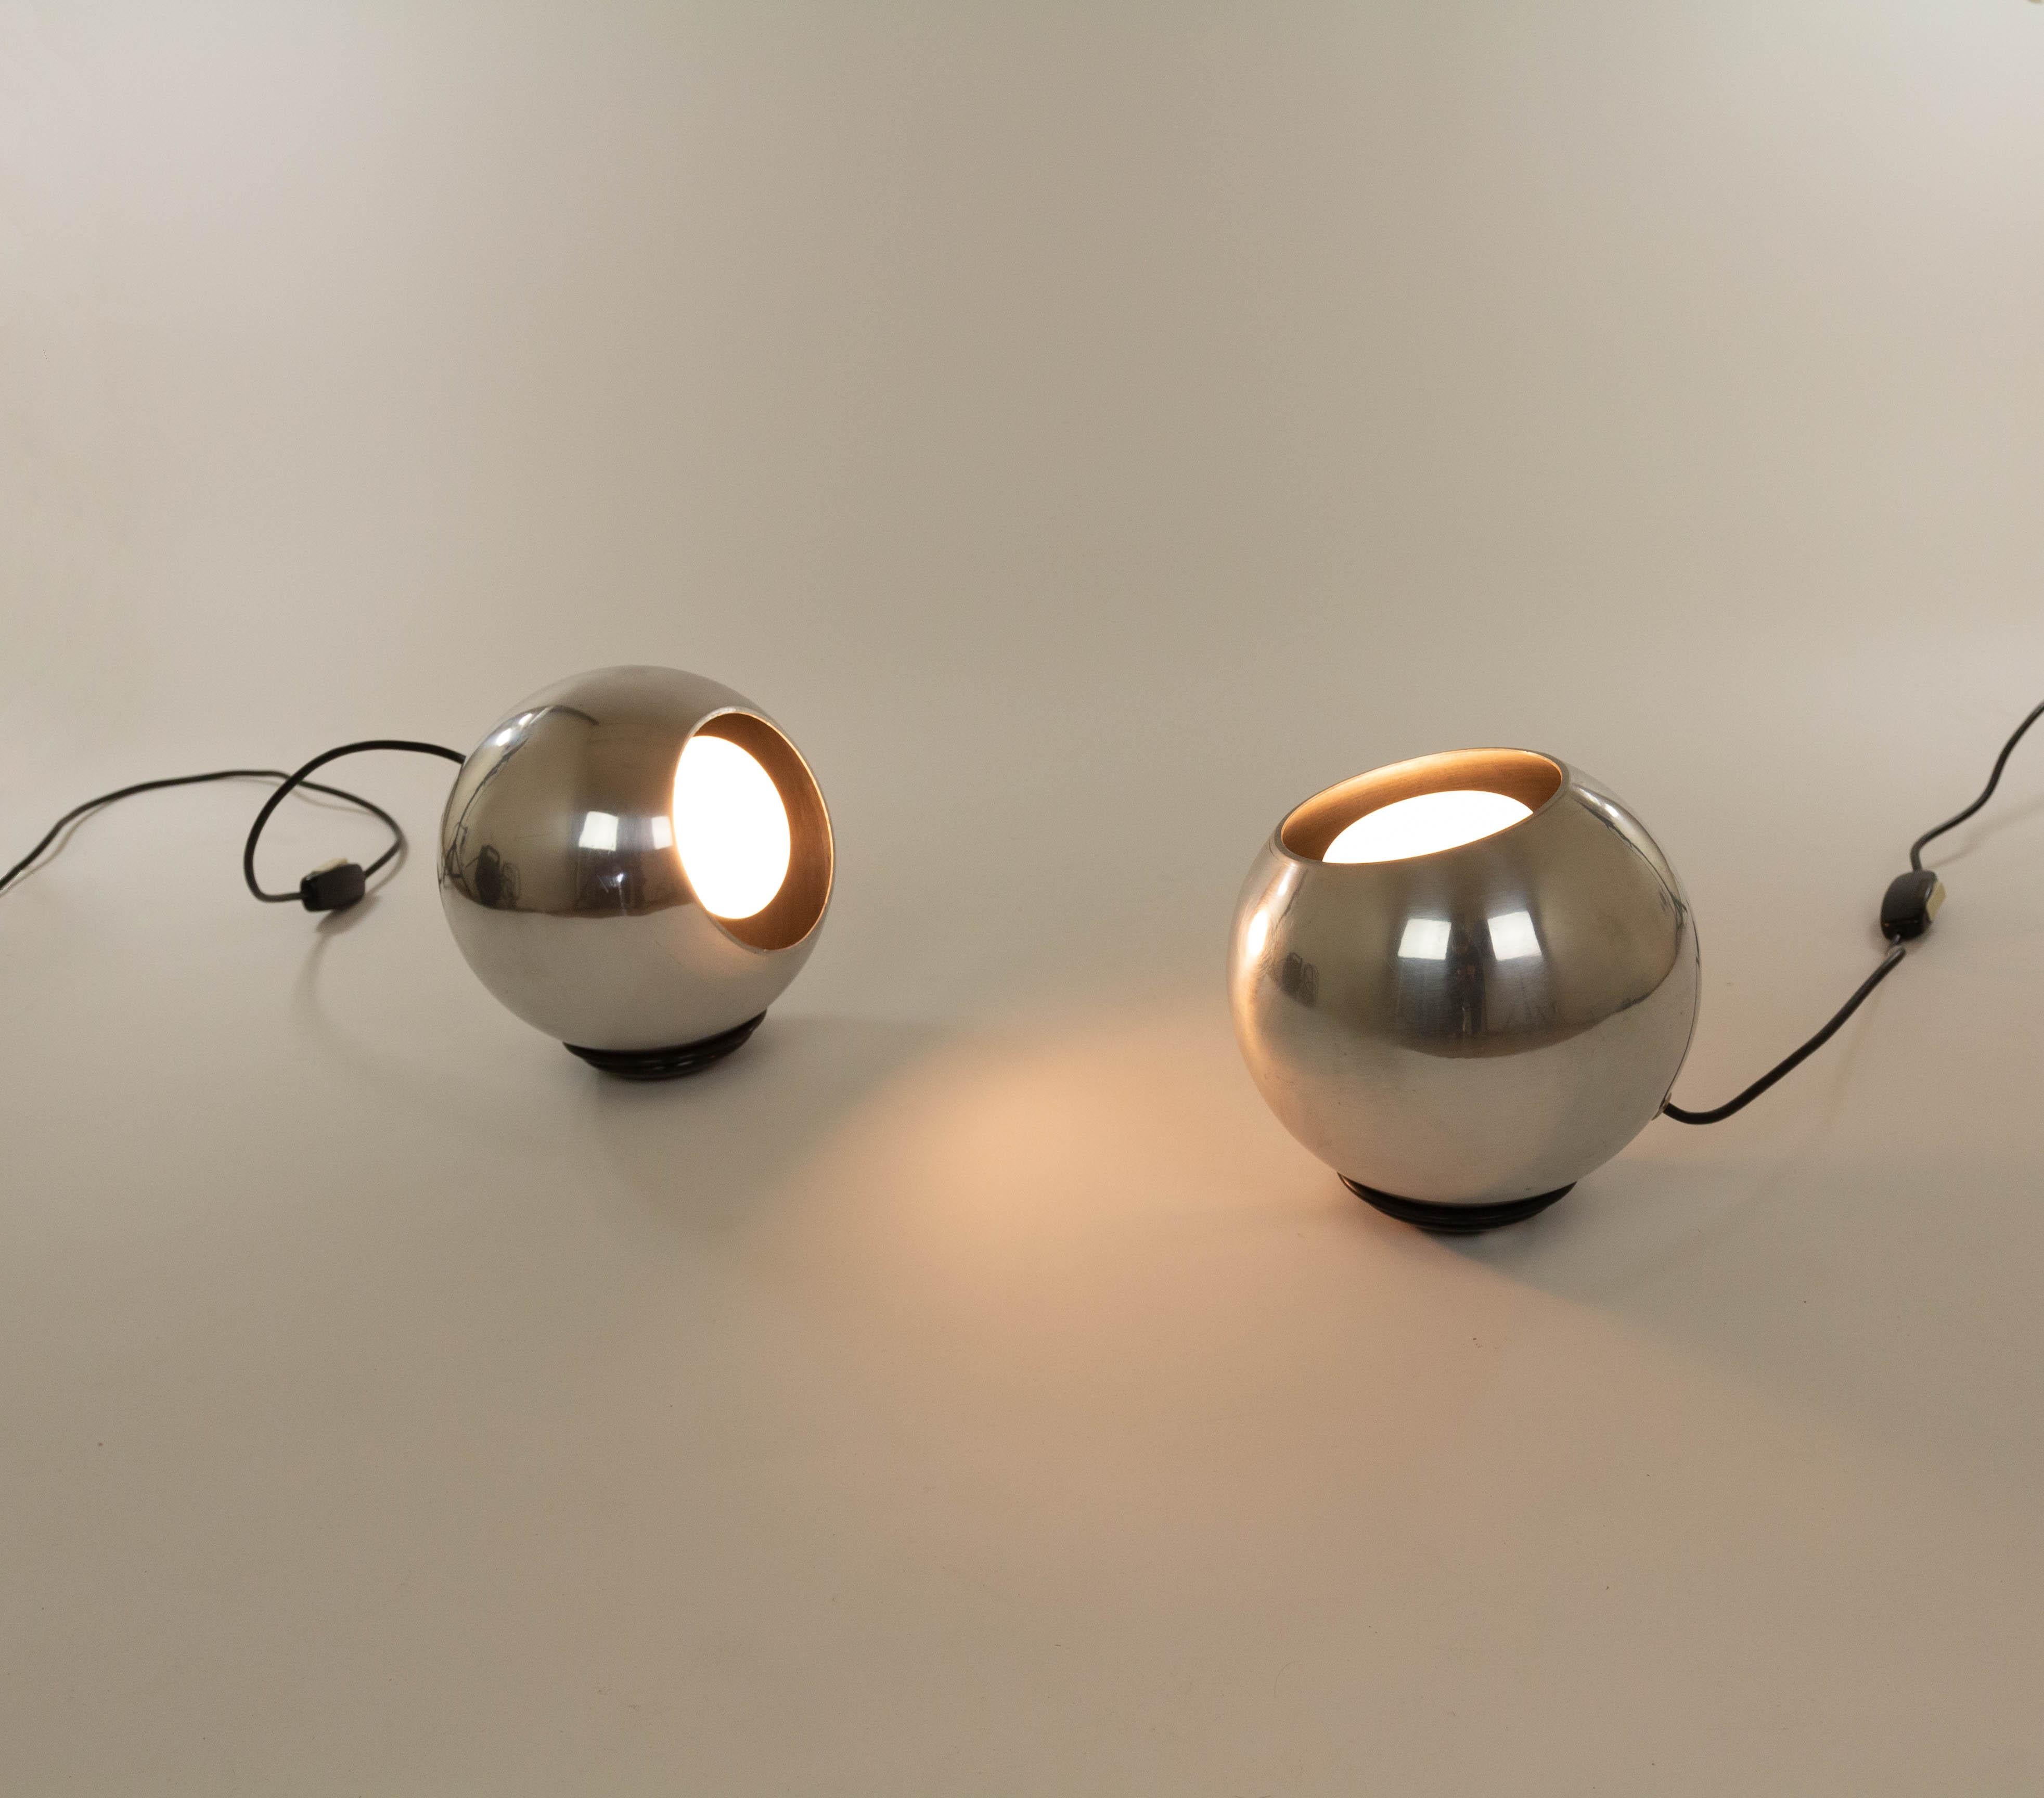 Paire de lampes de table en aluminium poli, modèle 586, conçues en 1962 par Gino Sarfatti pour Arteluce.

Comme le mentionne le catalogue AL Milano : 